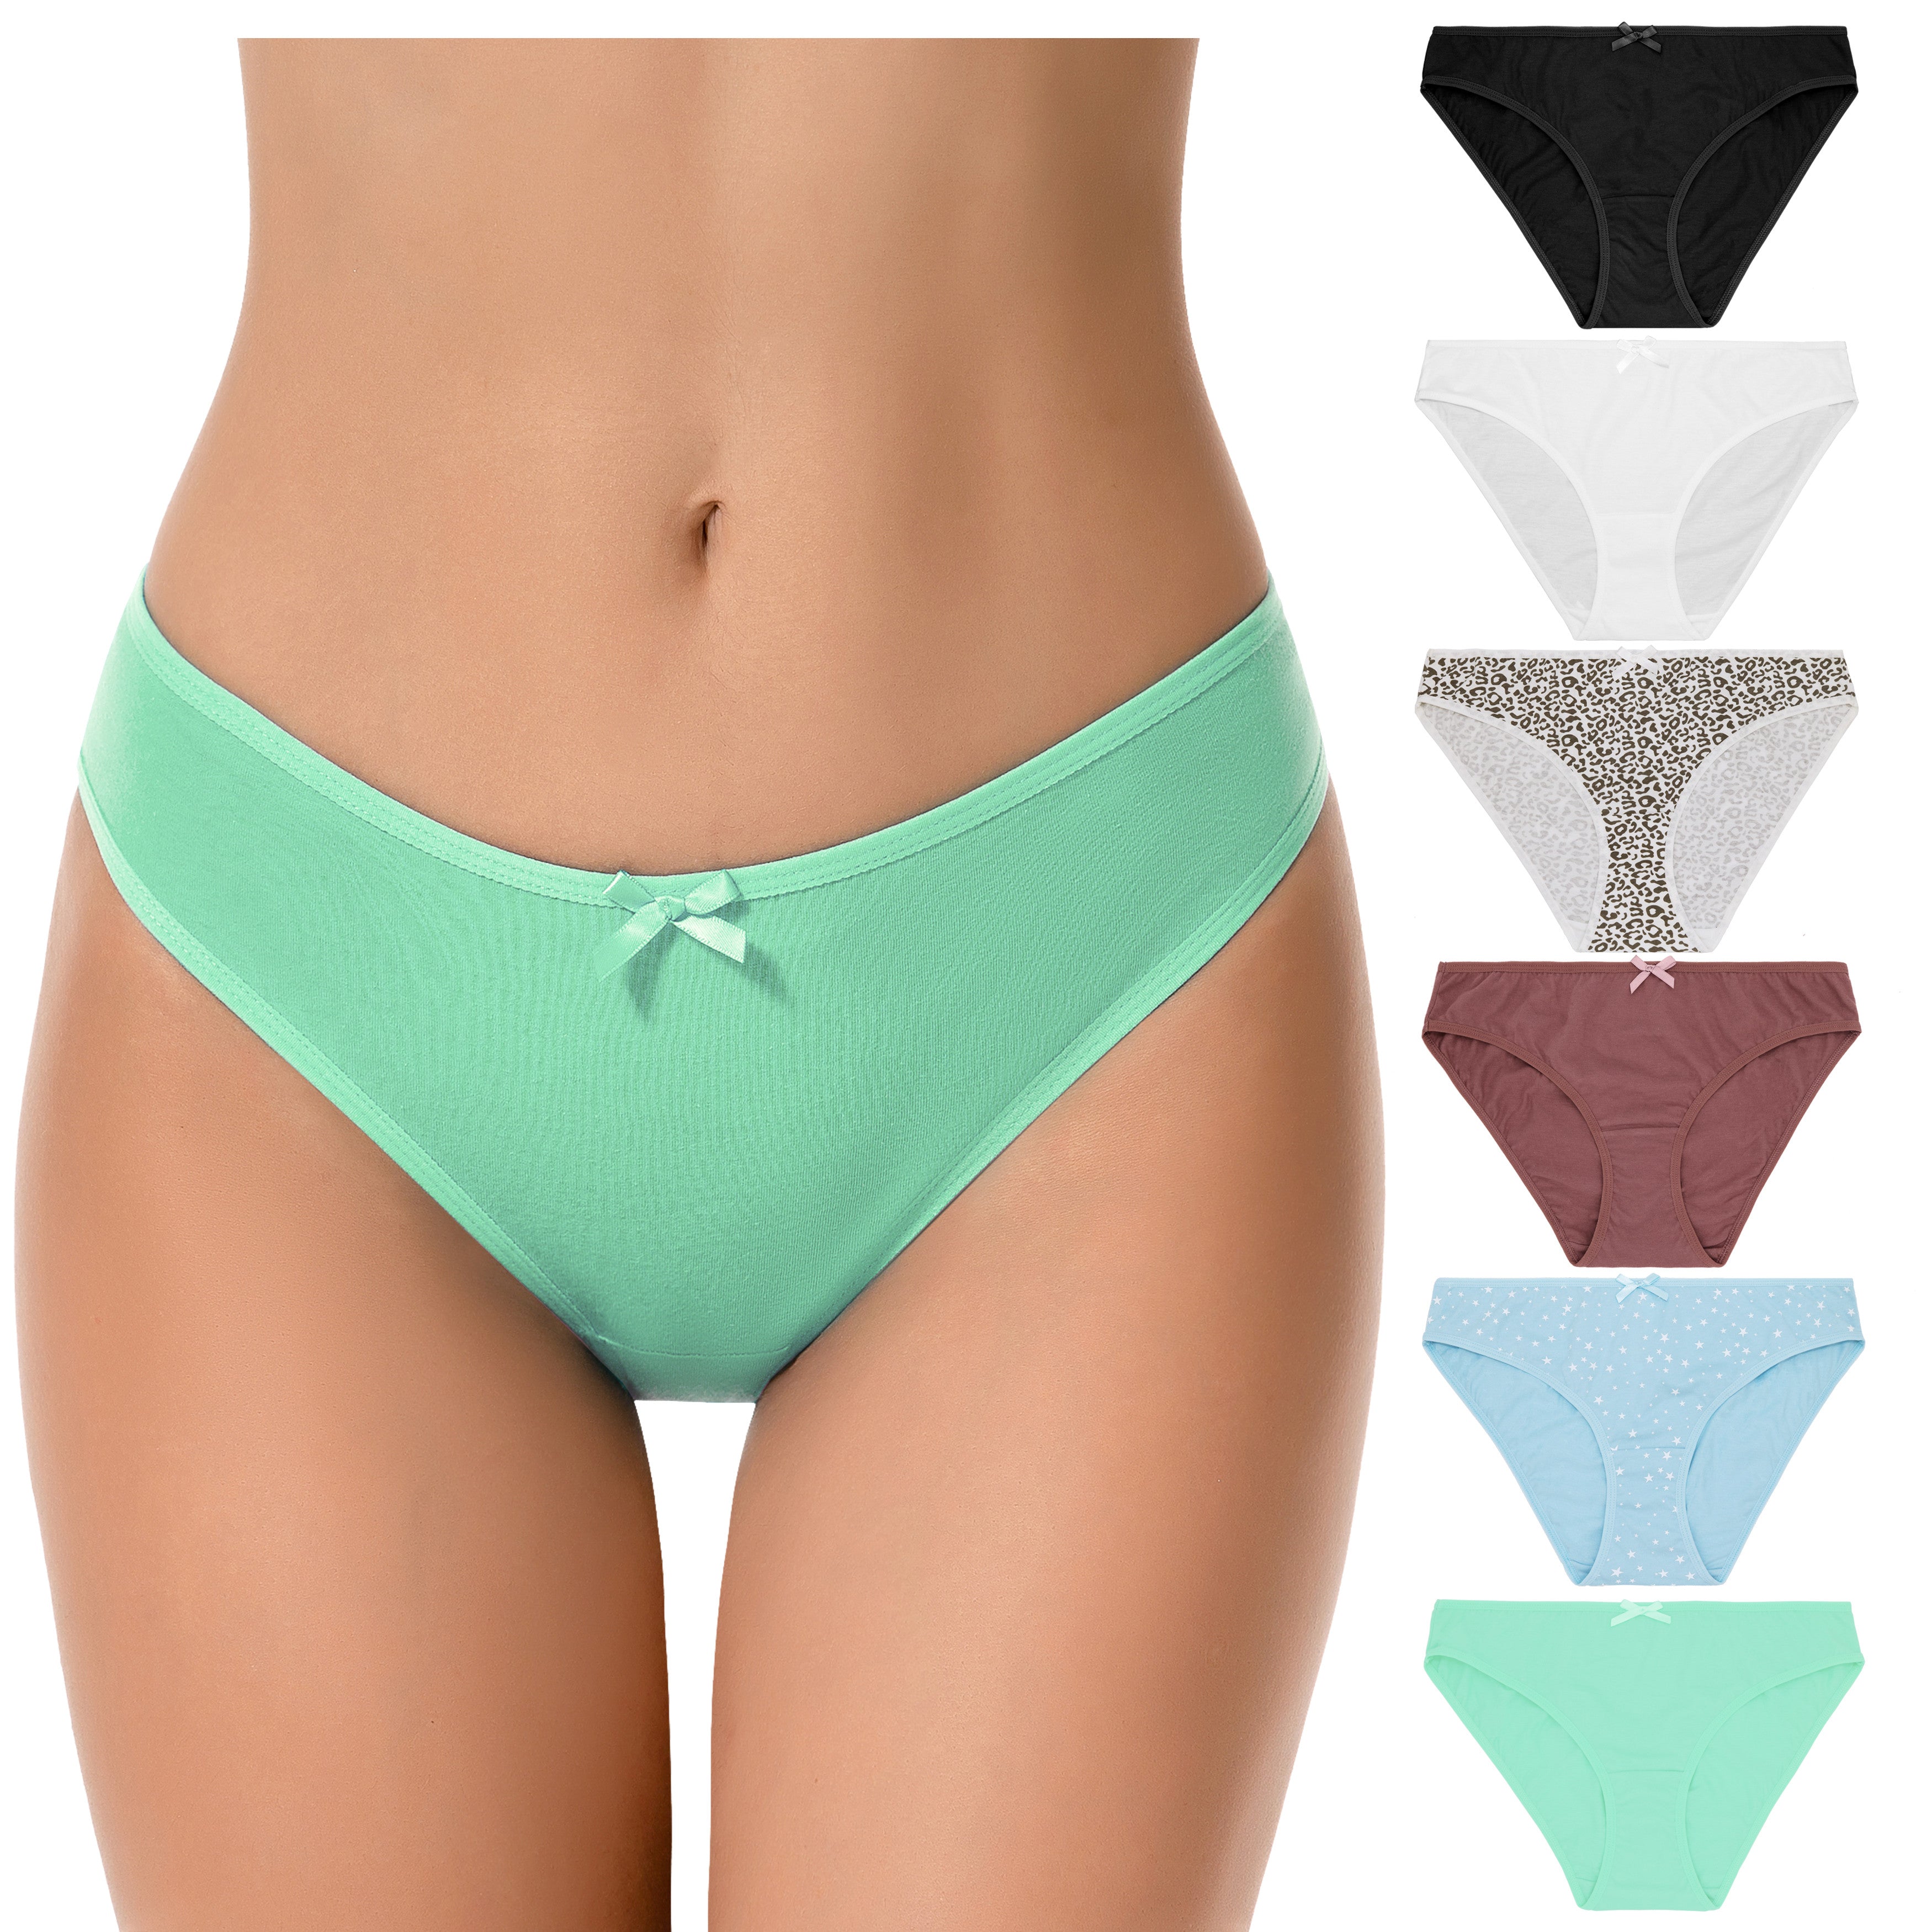 B91xZ Womens Underwear Bikini Plus Size Cotton Stretch Brief